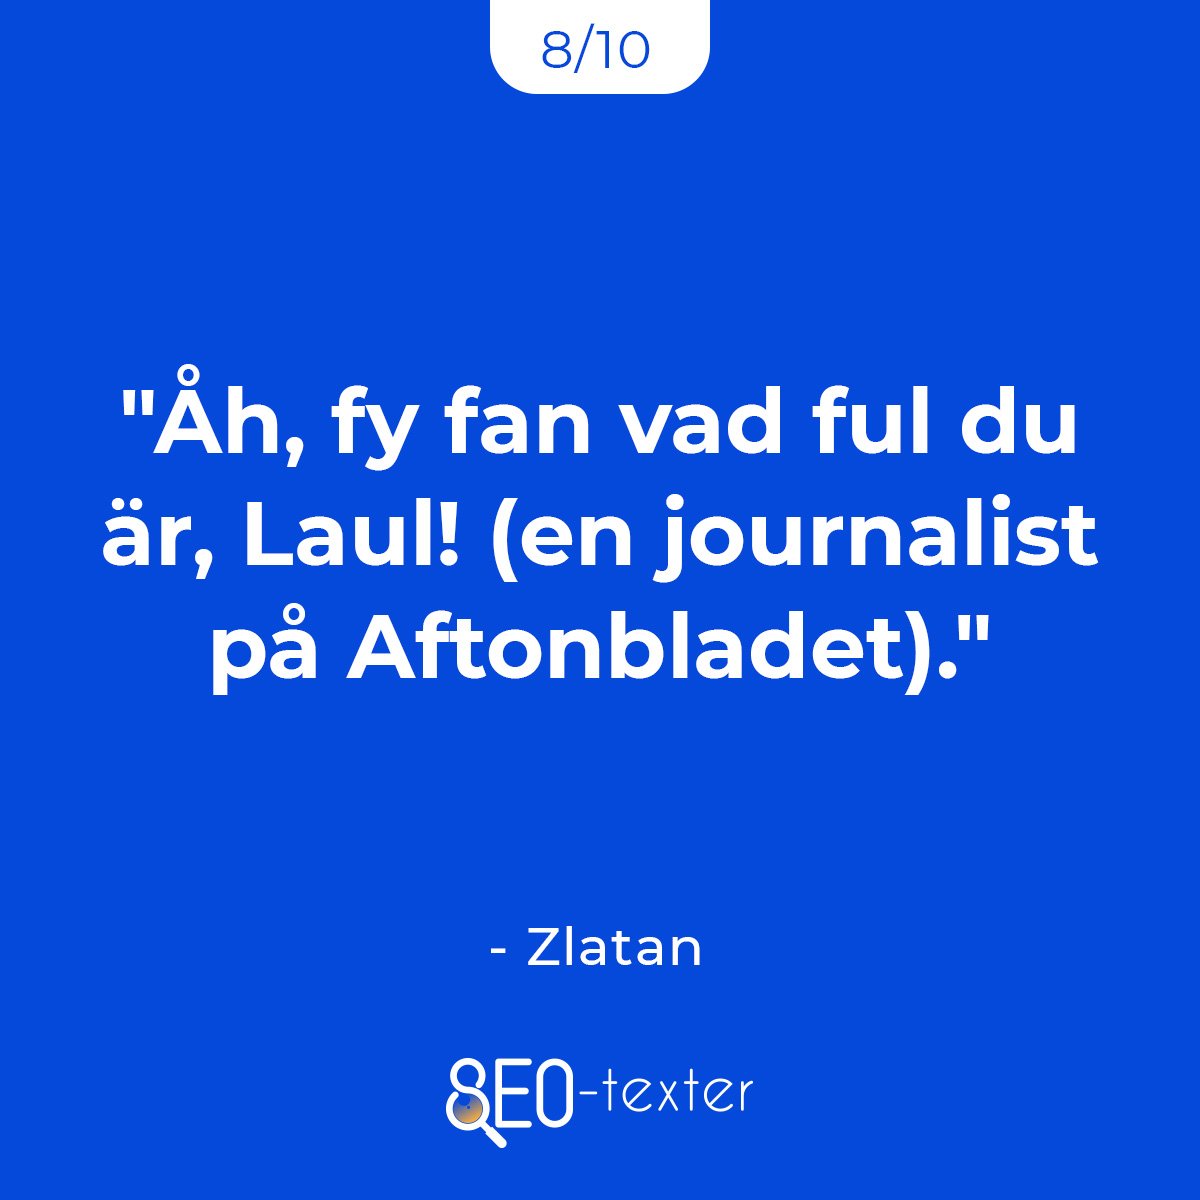 Ah fy fan vad ful du ar Laul en journalist pa Aftonbladet